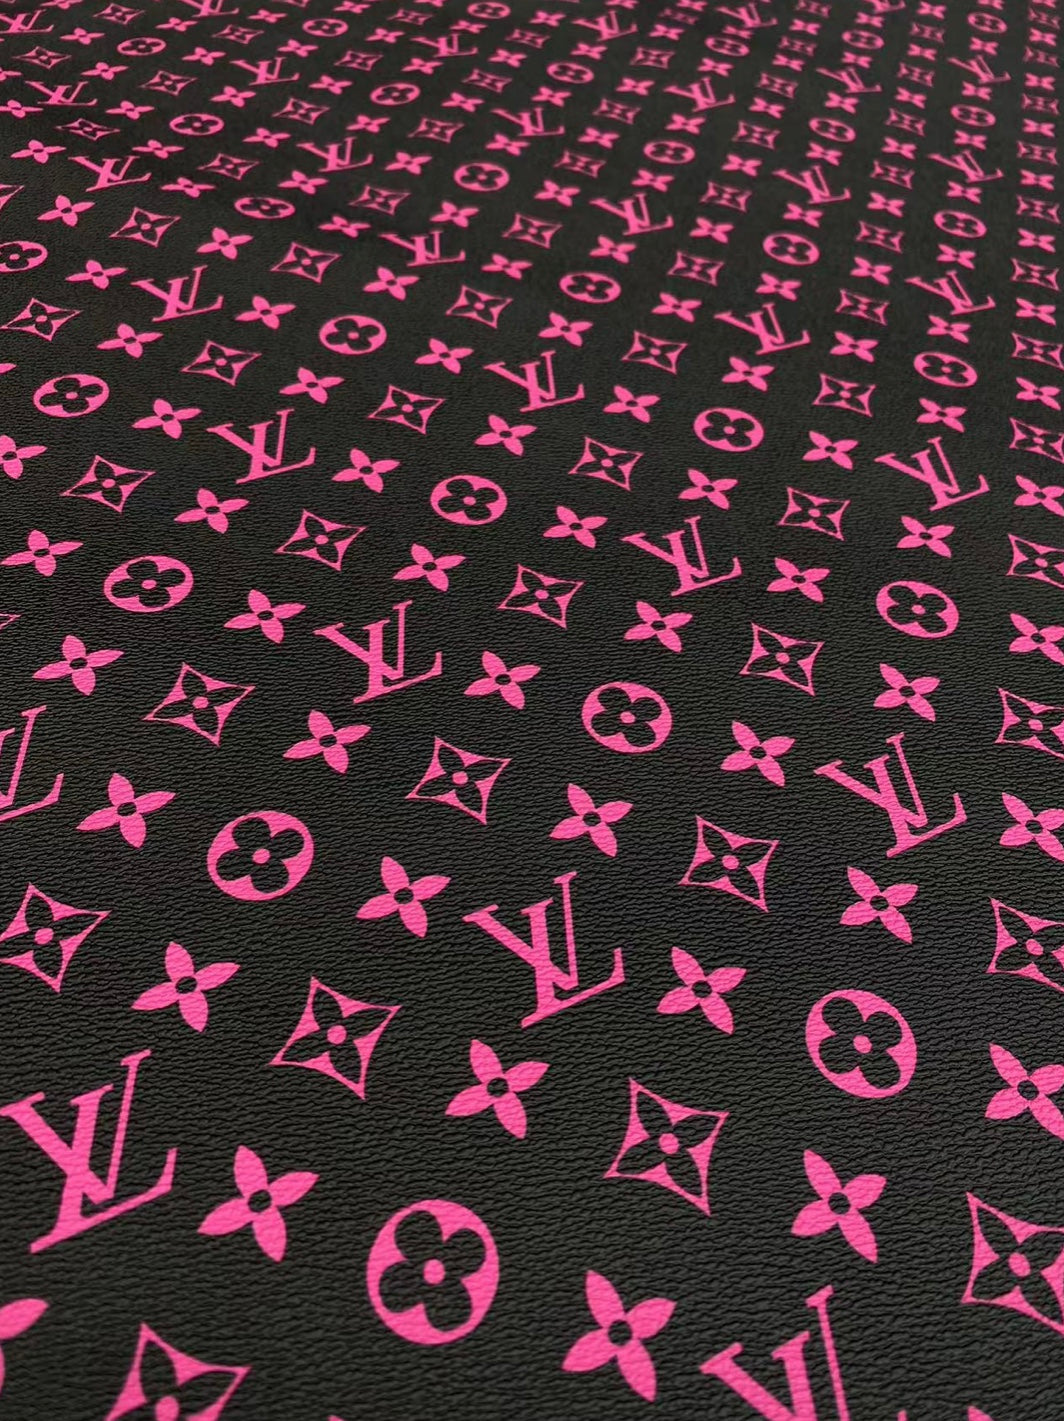 Black Pink LV Vinyl Leather for Custom Bag DIY Crafts